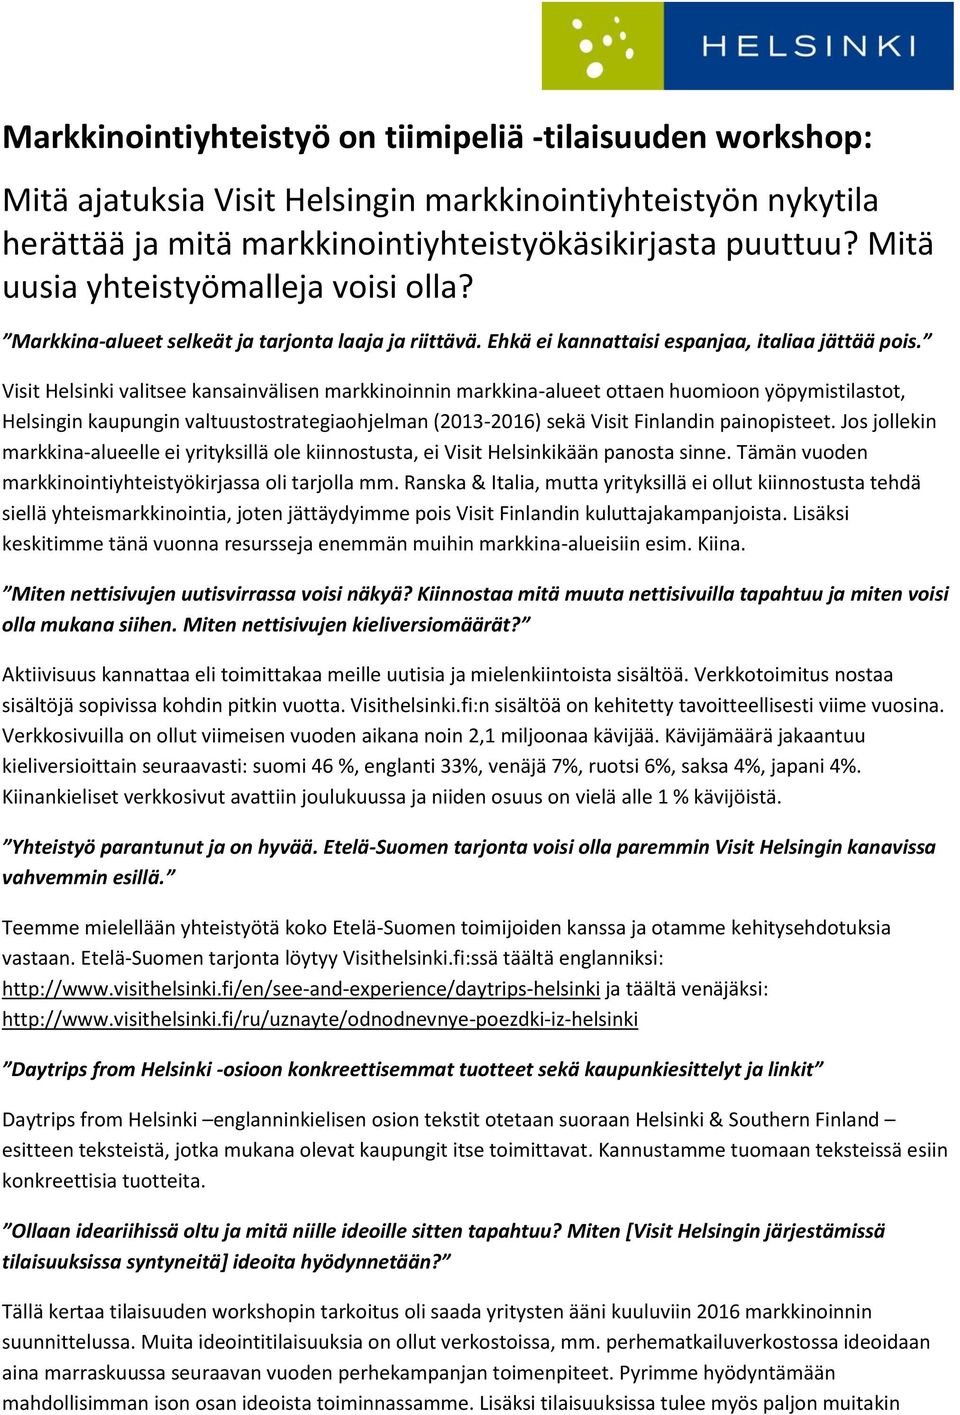 Visit Helsinki valitsee kansainvälisen markkinoinnin markkina-alueet ottaen huomioon yöpymistilastot, Helsingin kaupungin valtuustostrategiaohjelman (2013-2016) sekä Visit Finlandin painopisteet.